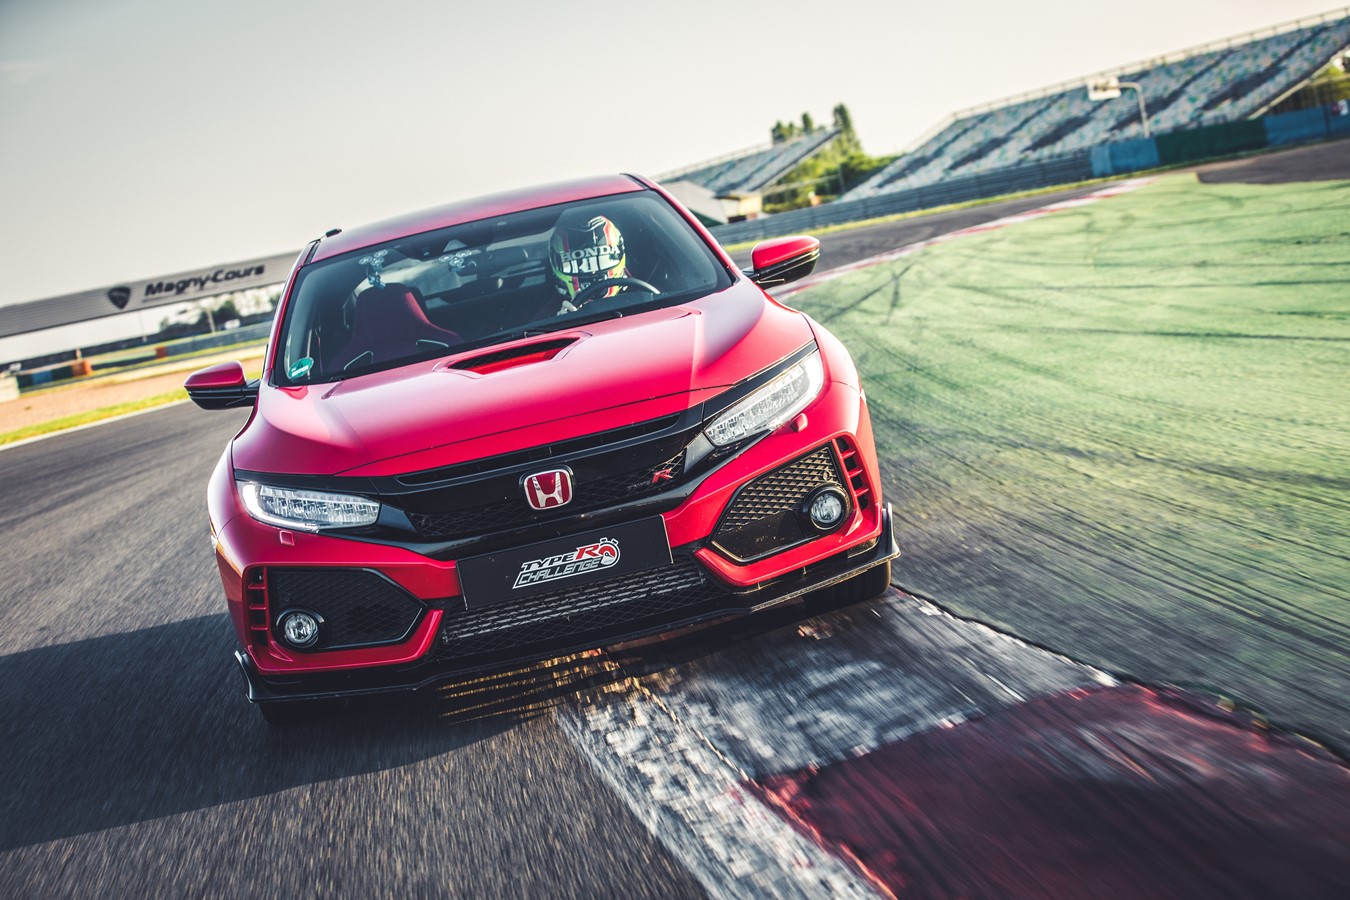  ”Type R Challenge 2018” är igång! Honda sätter nytt varvrekord med Civic Type R på GP-banan Magny-Cours